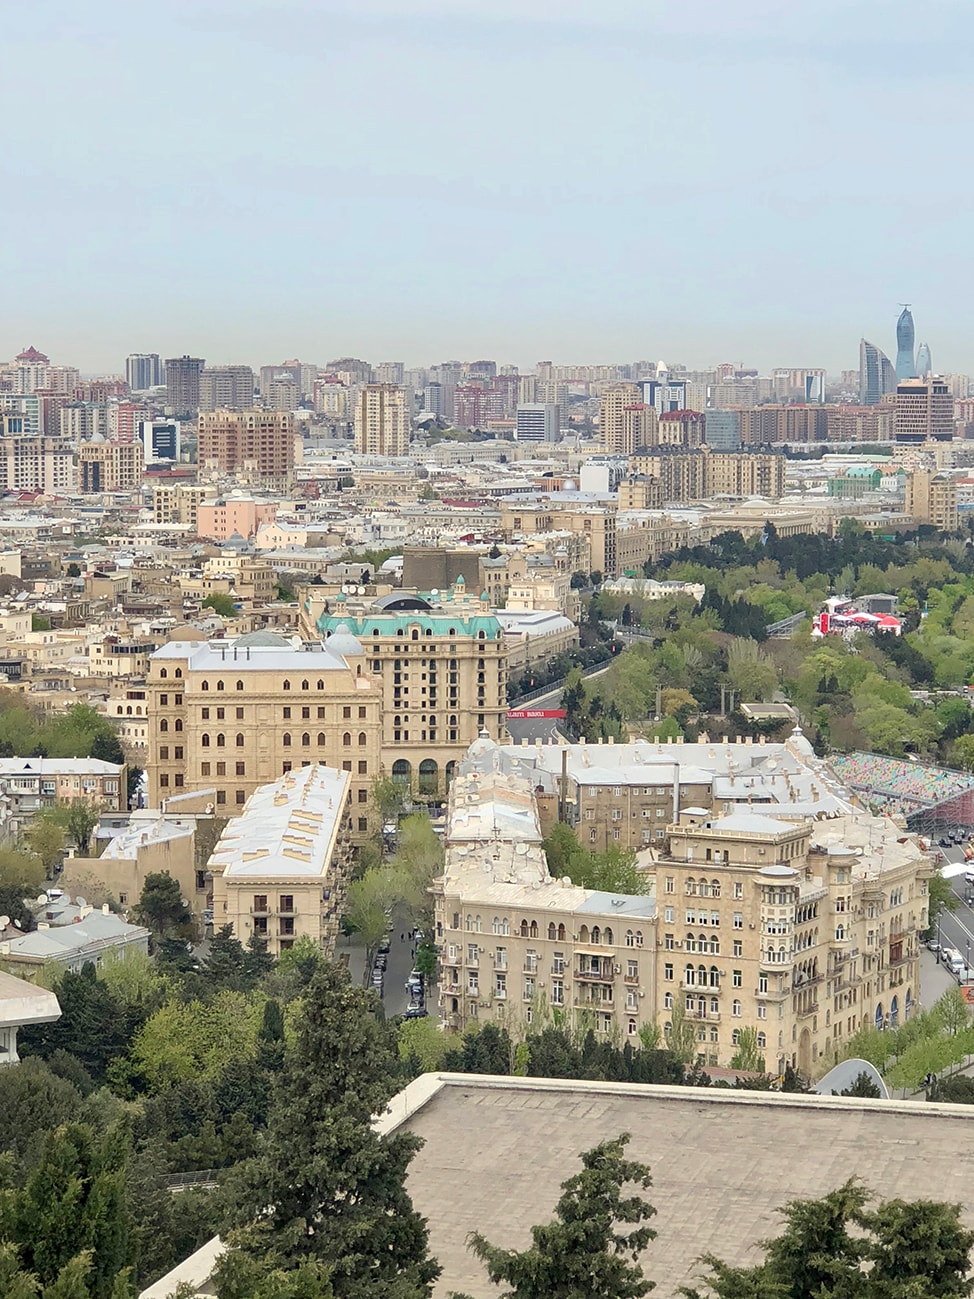 View of Baku's Old City from Dagustu Park